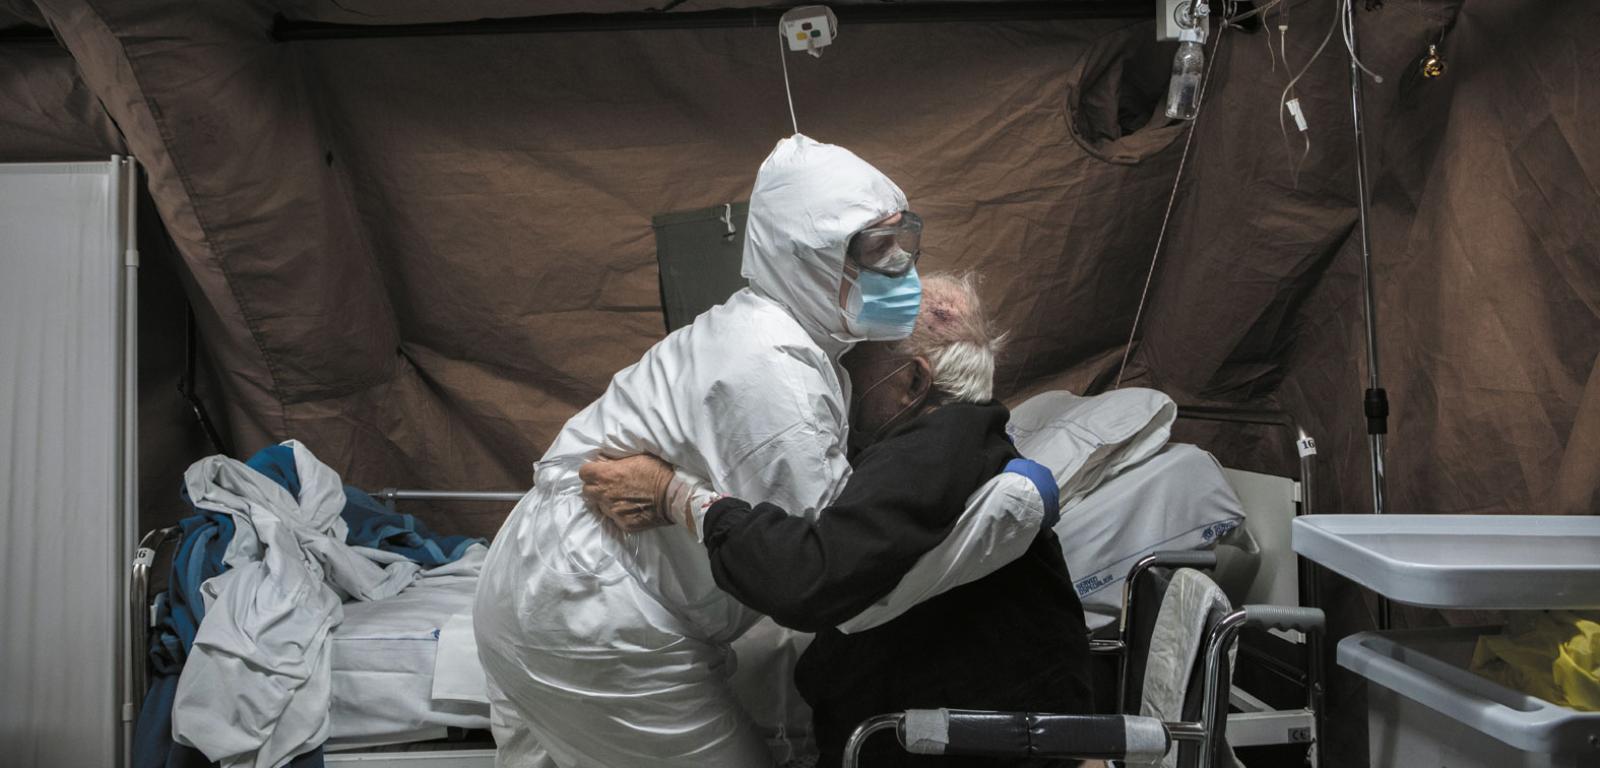 Pielęgniarka z włoskiej armii pomaga pacjentowi z COVID-em przebywającemu w szpitalu polowym w Perugii, który został otwarty w pobliżu przeciążonego szpitala Santa Maria della Misericordia. W grudniu 2020 roku nadal zmagał się z kolejnymi falami pandemii.